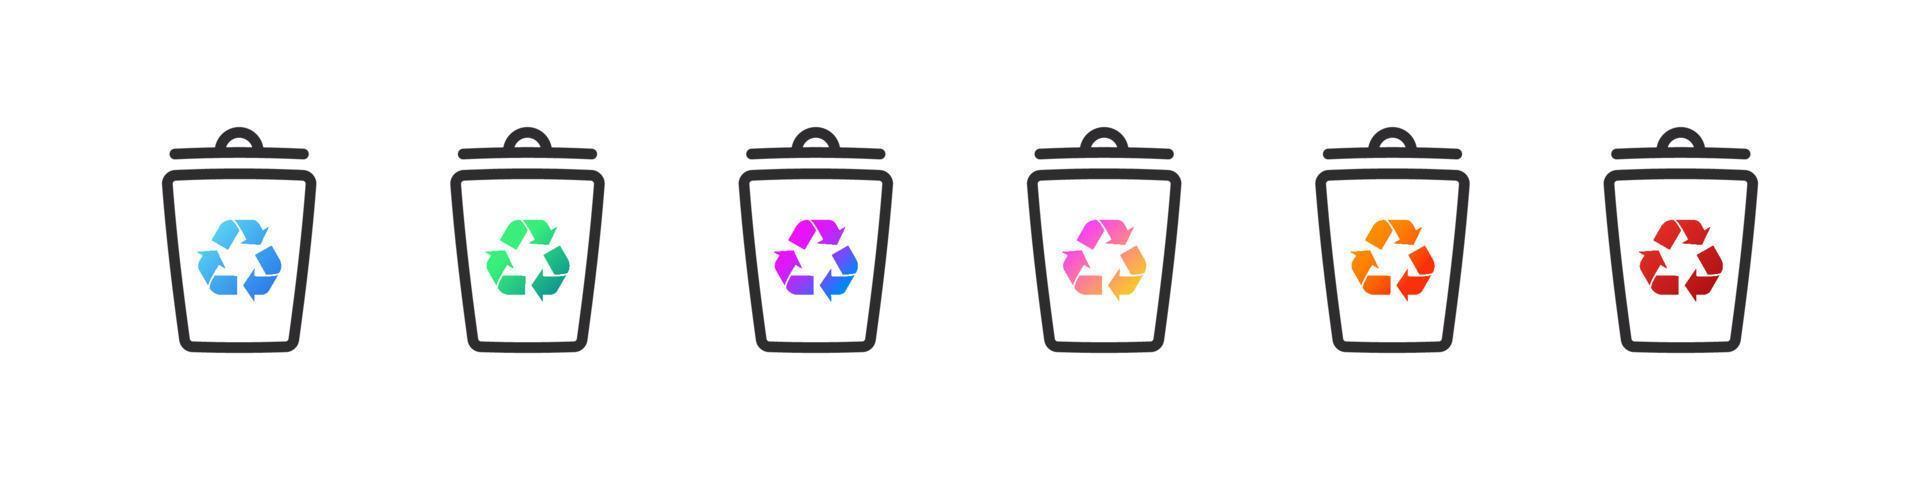 ensemble de bacs de recyclage. icônes de poubelles pour différents types de déchets. illustration vectorielle vecteur